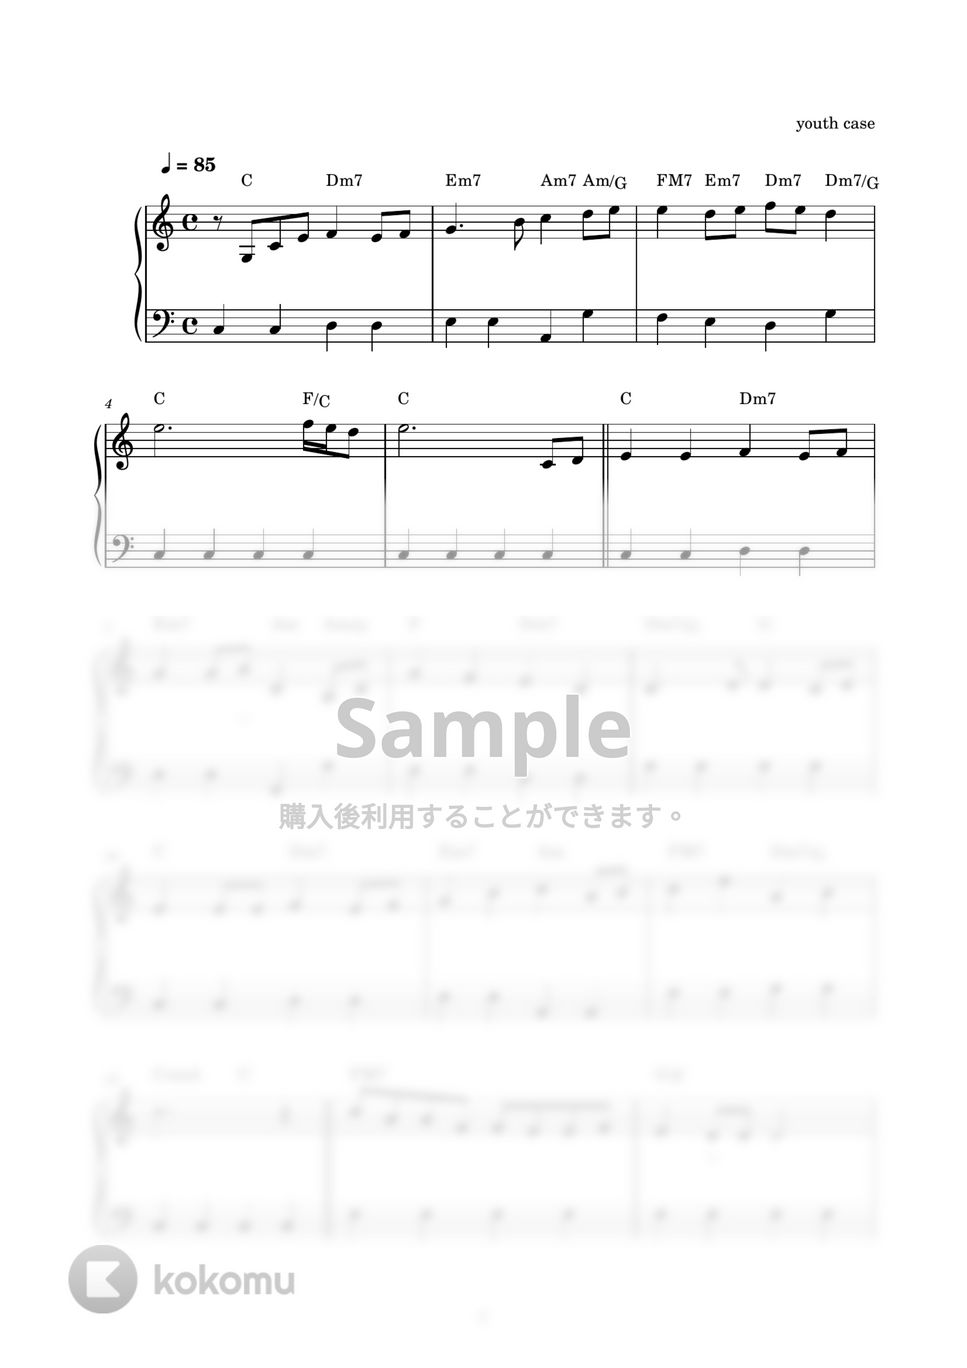 嵐 - ふるさと (ピアノ楽譜 / かんたん両手 / 歌詞付き / ドレミ付き / 初心者向き) by piano.tokyo